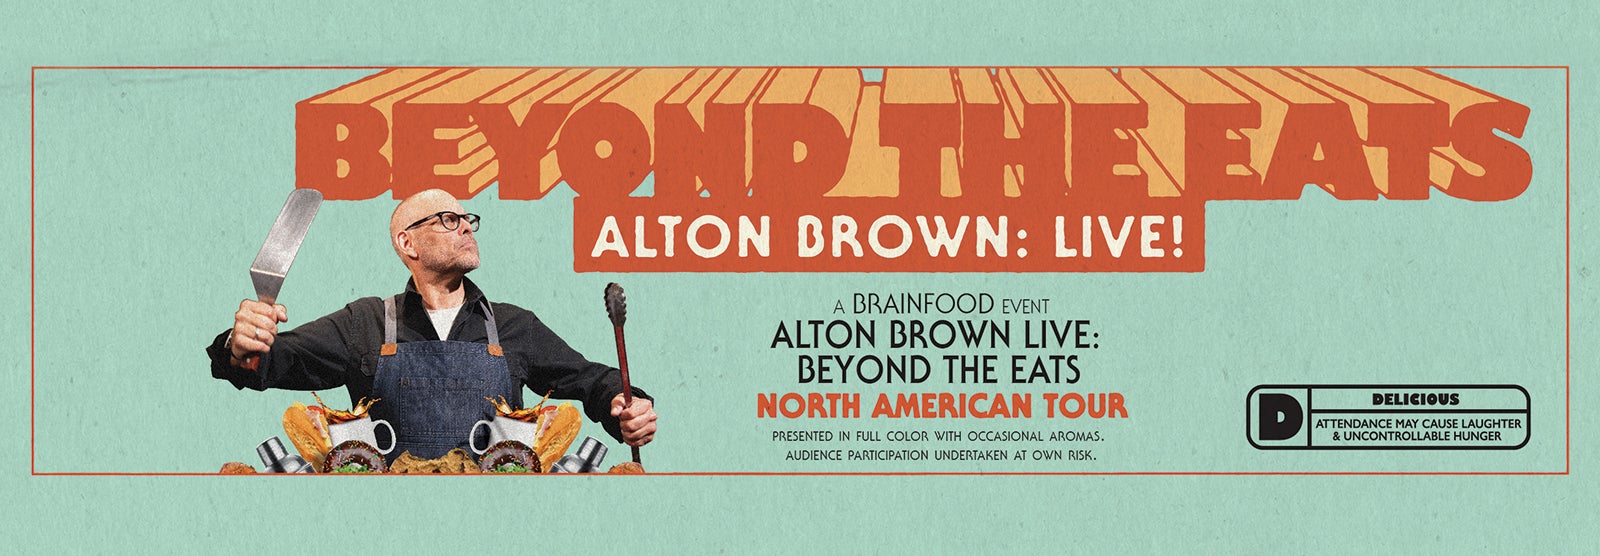 Alton Brown Live: Beyond The Eats